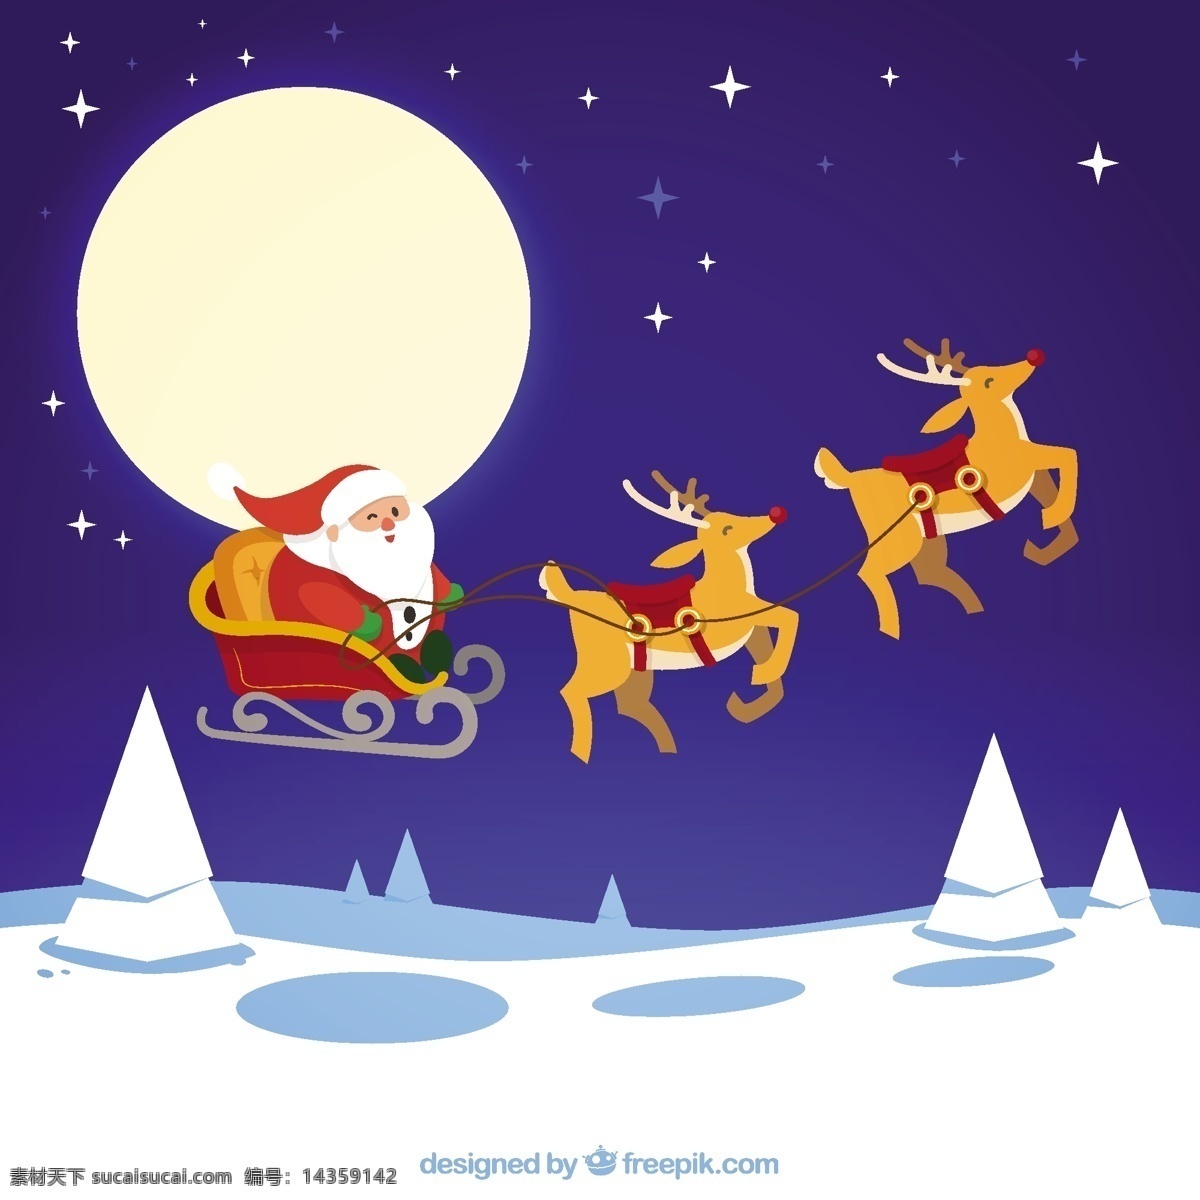 圣 塔克 劳斯 飞 雪橇 圣诞节 雪 圣诞快乐 冬天快乐 圣诞老人 克劳斯 庆祝节日 驯鹿 节日快乐 季节 节日 快乐 十二月 白色